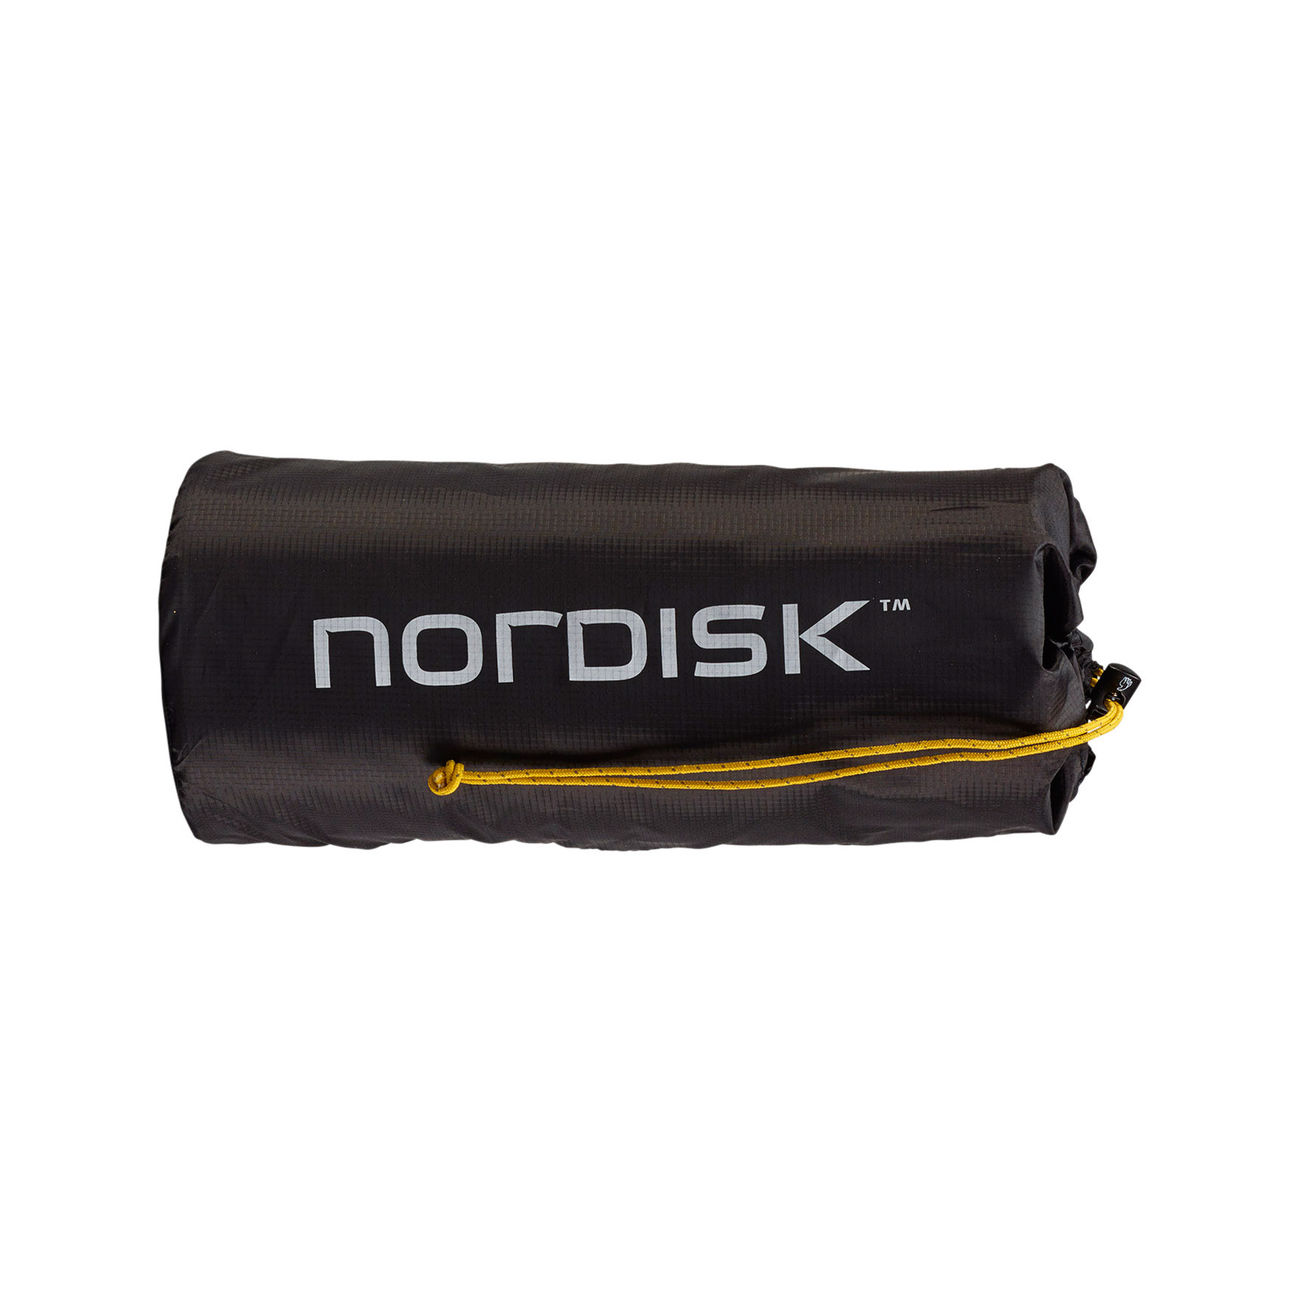 Nordisk Isomatte Grip 2.5 R gelb / schwarz selbstaufblasend mit extrem kleinem Packmaß Bild 1